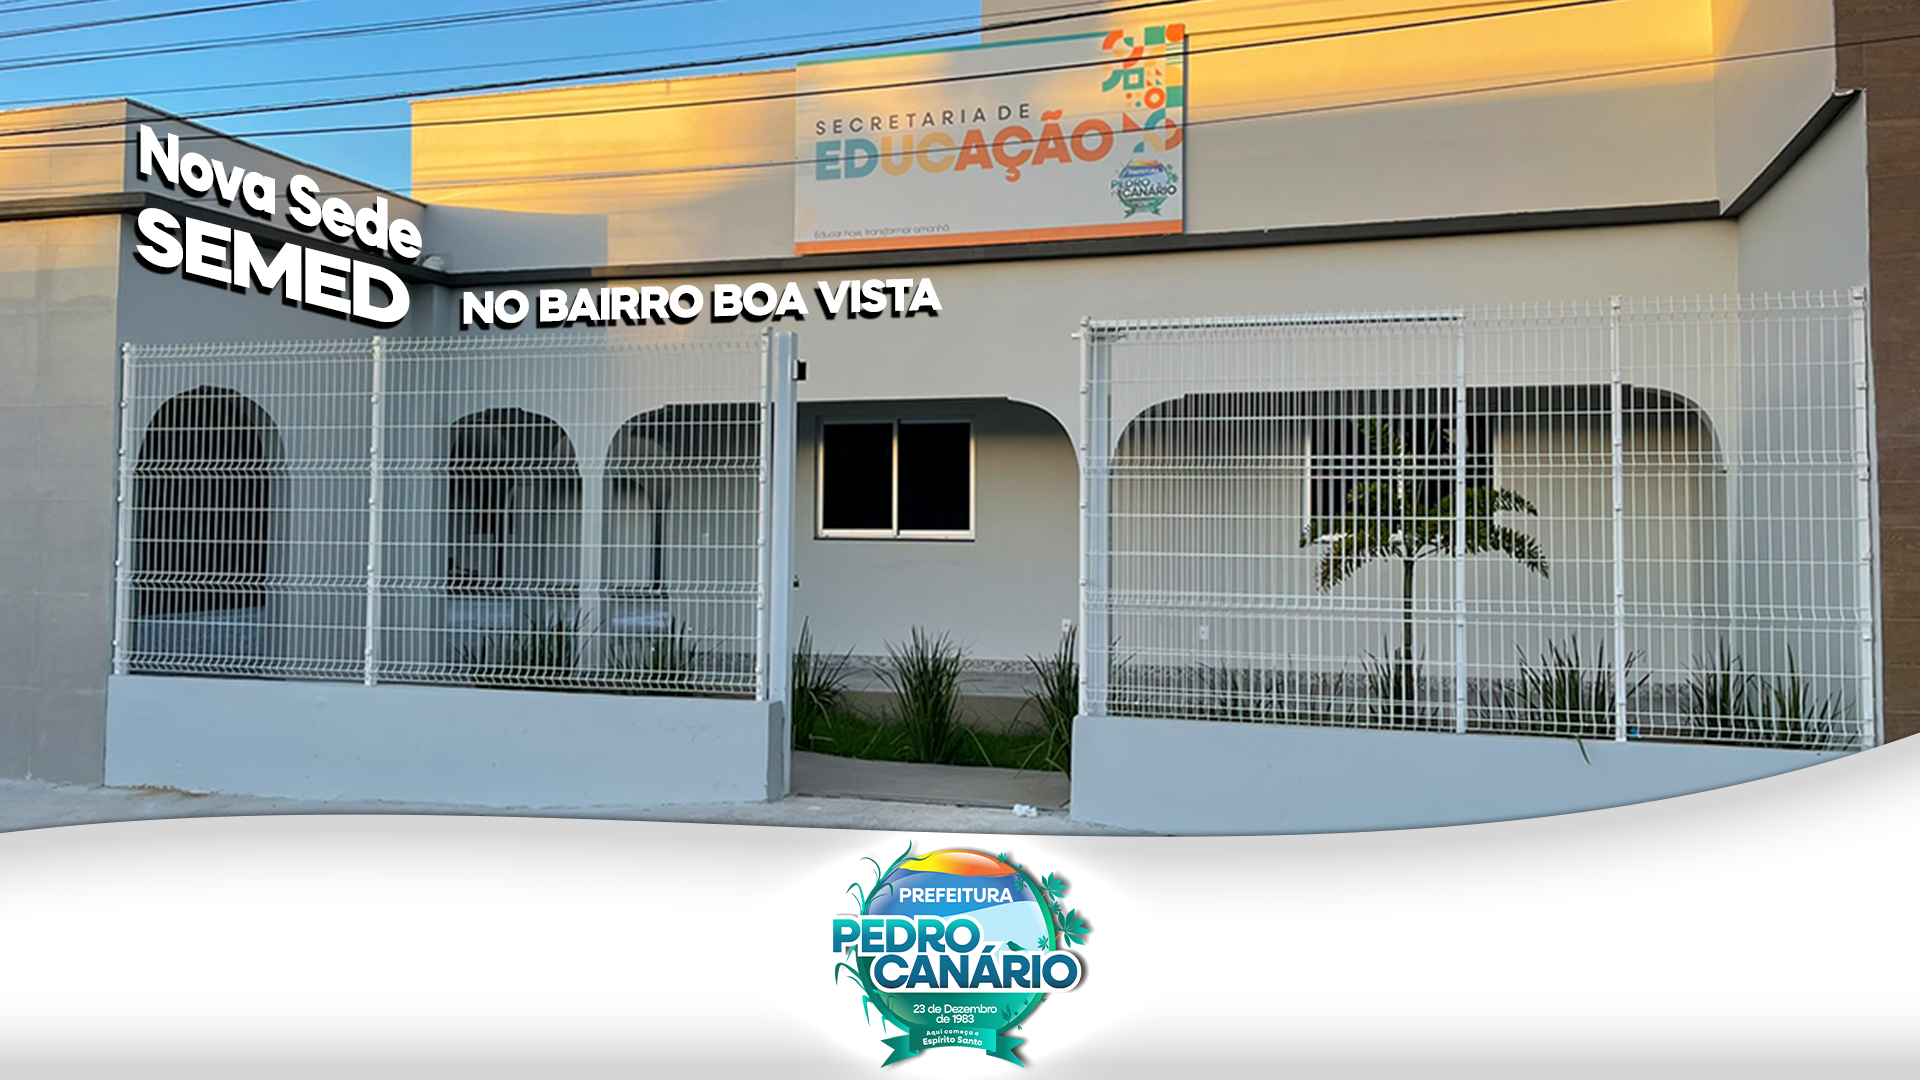 Nova sede da Secretaria de Educação será inaugurada nesta sexta-feira em Pedro Canário